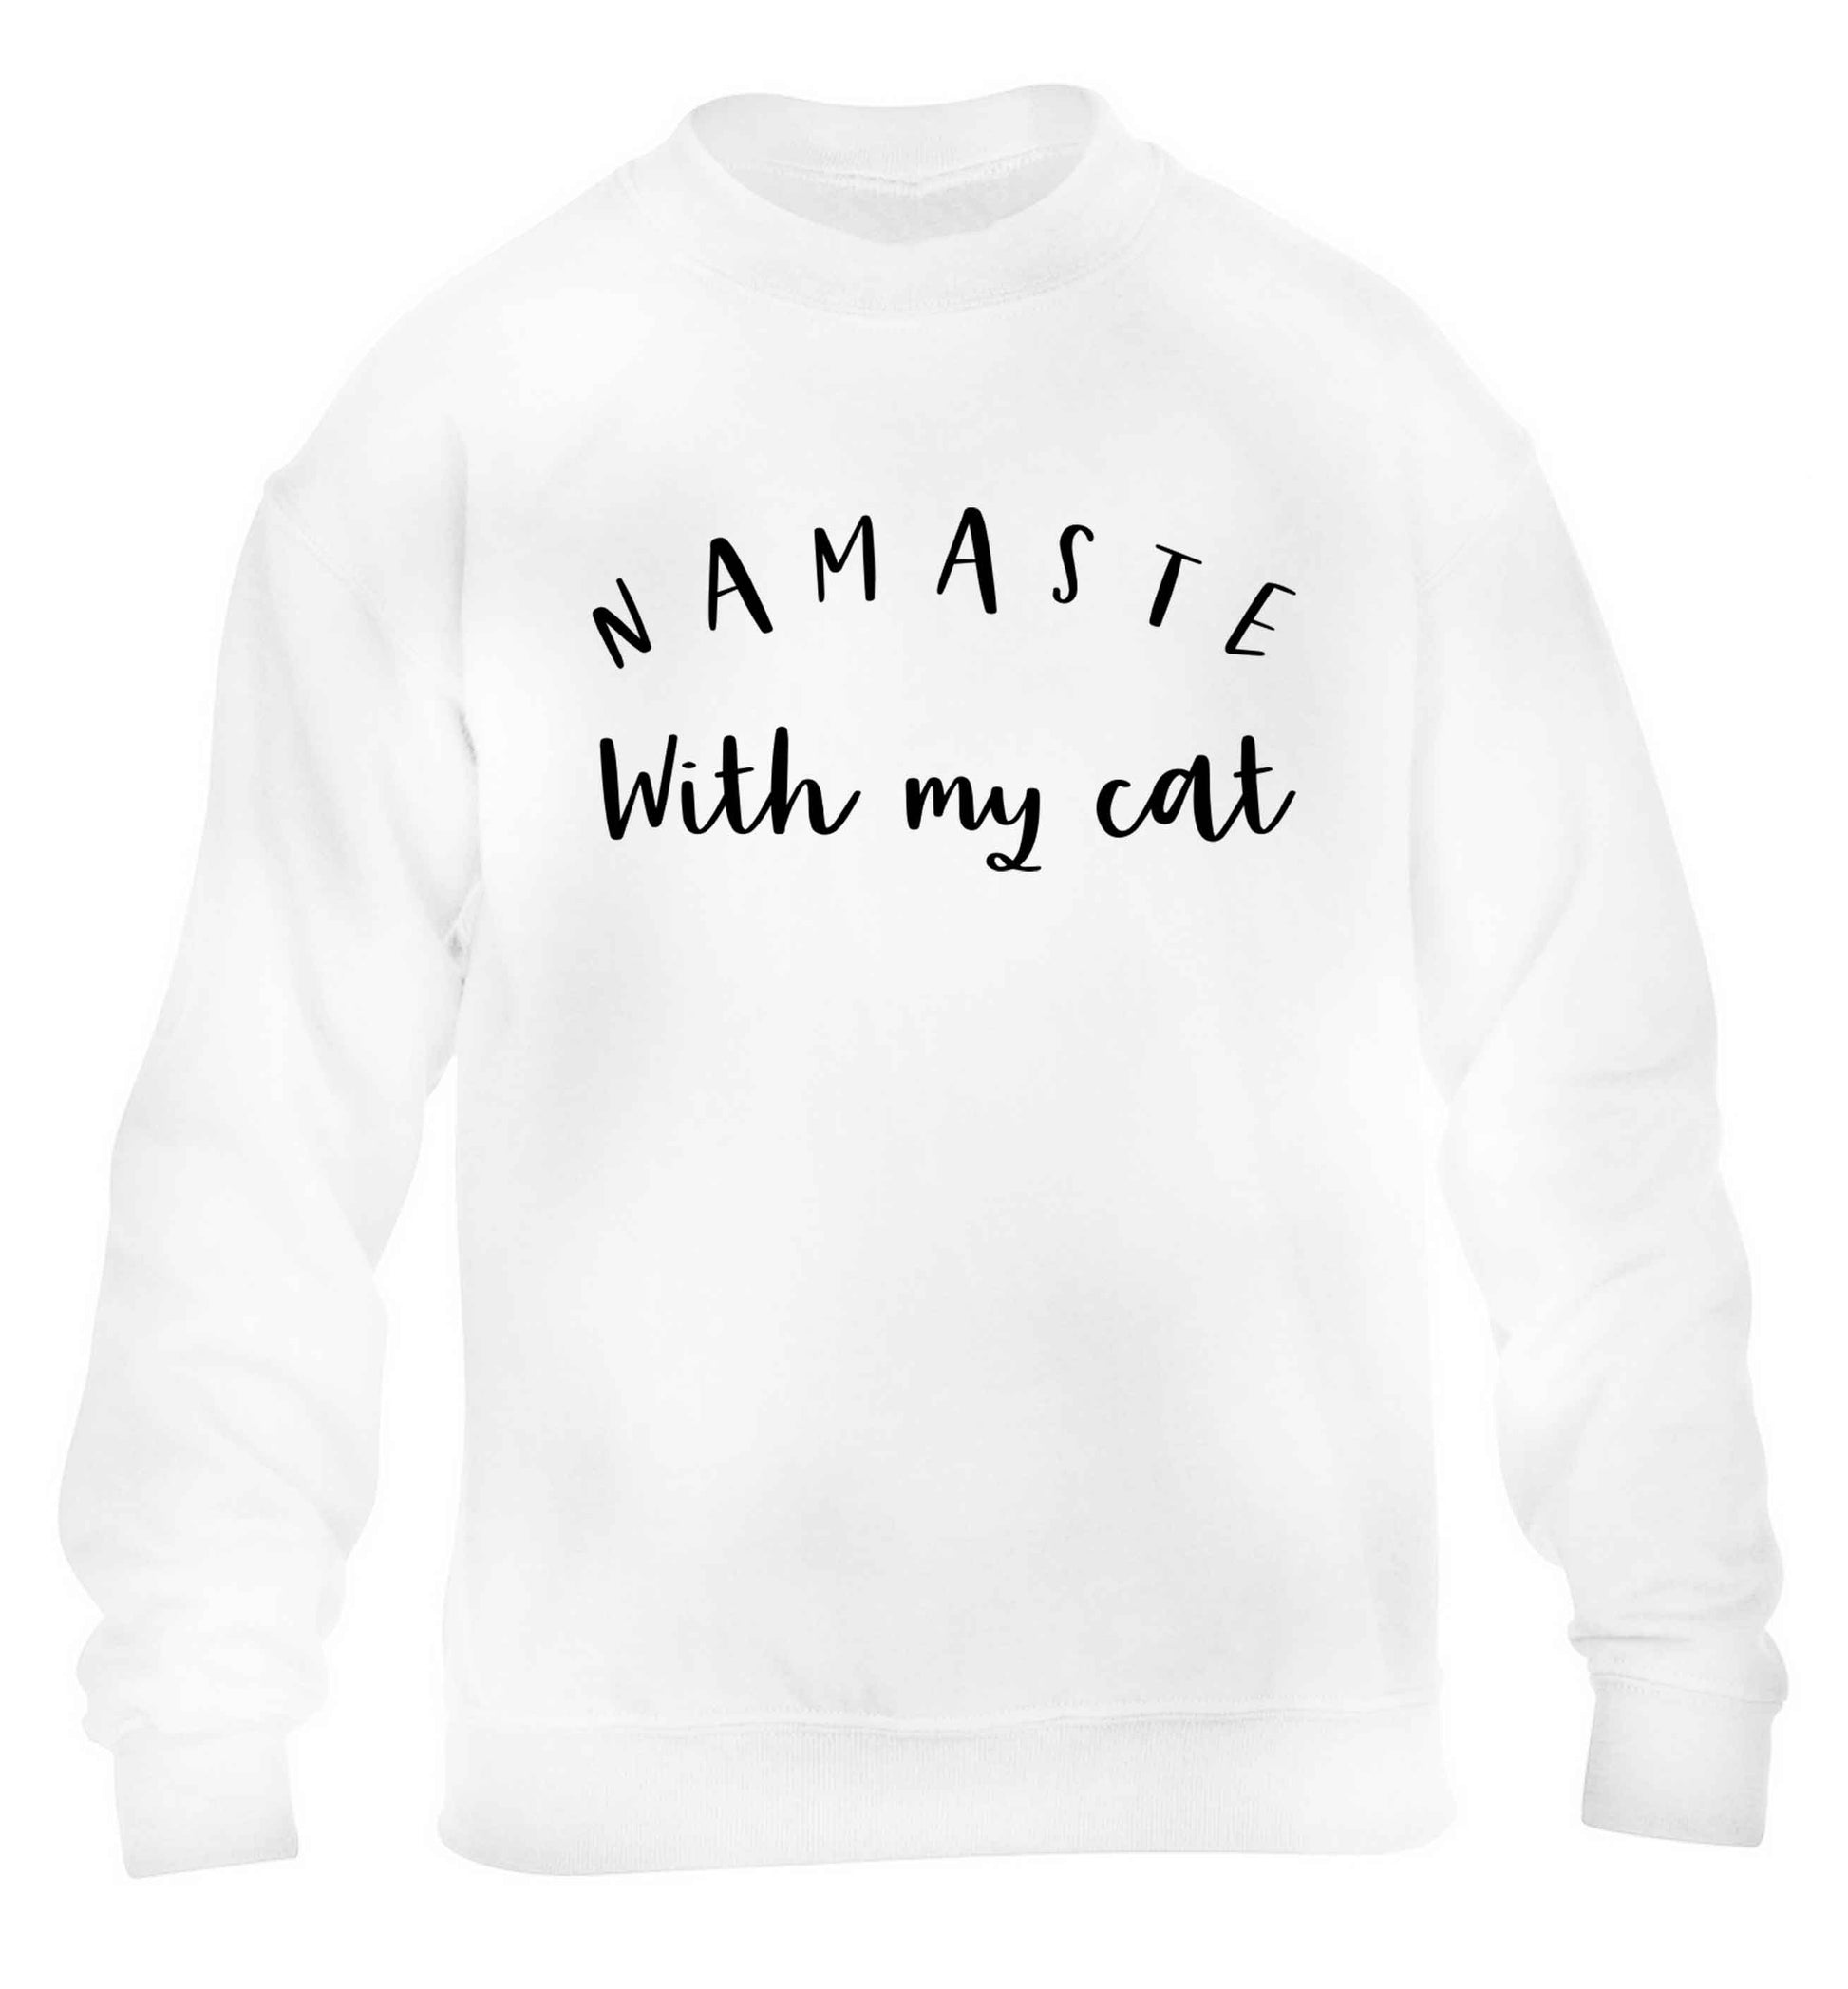 Namaste with my cat children's white sweater 12-13 Years